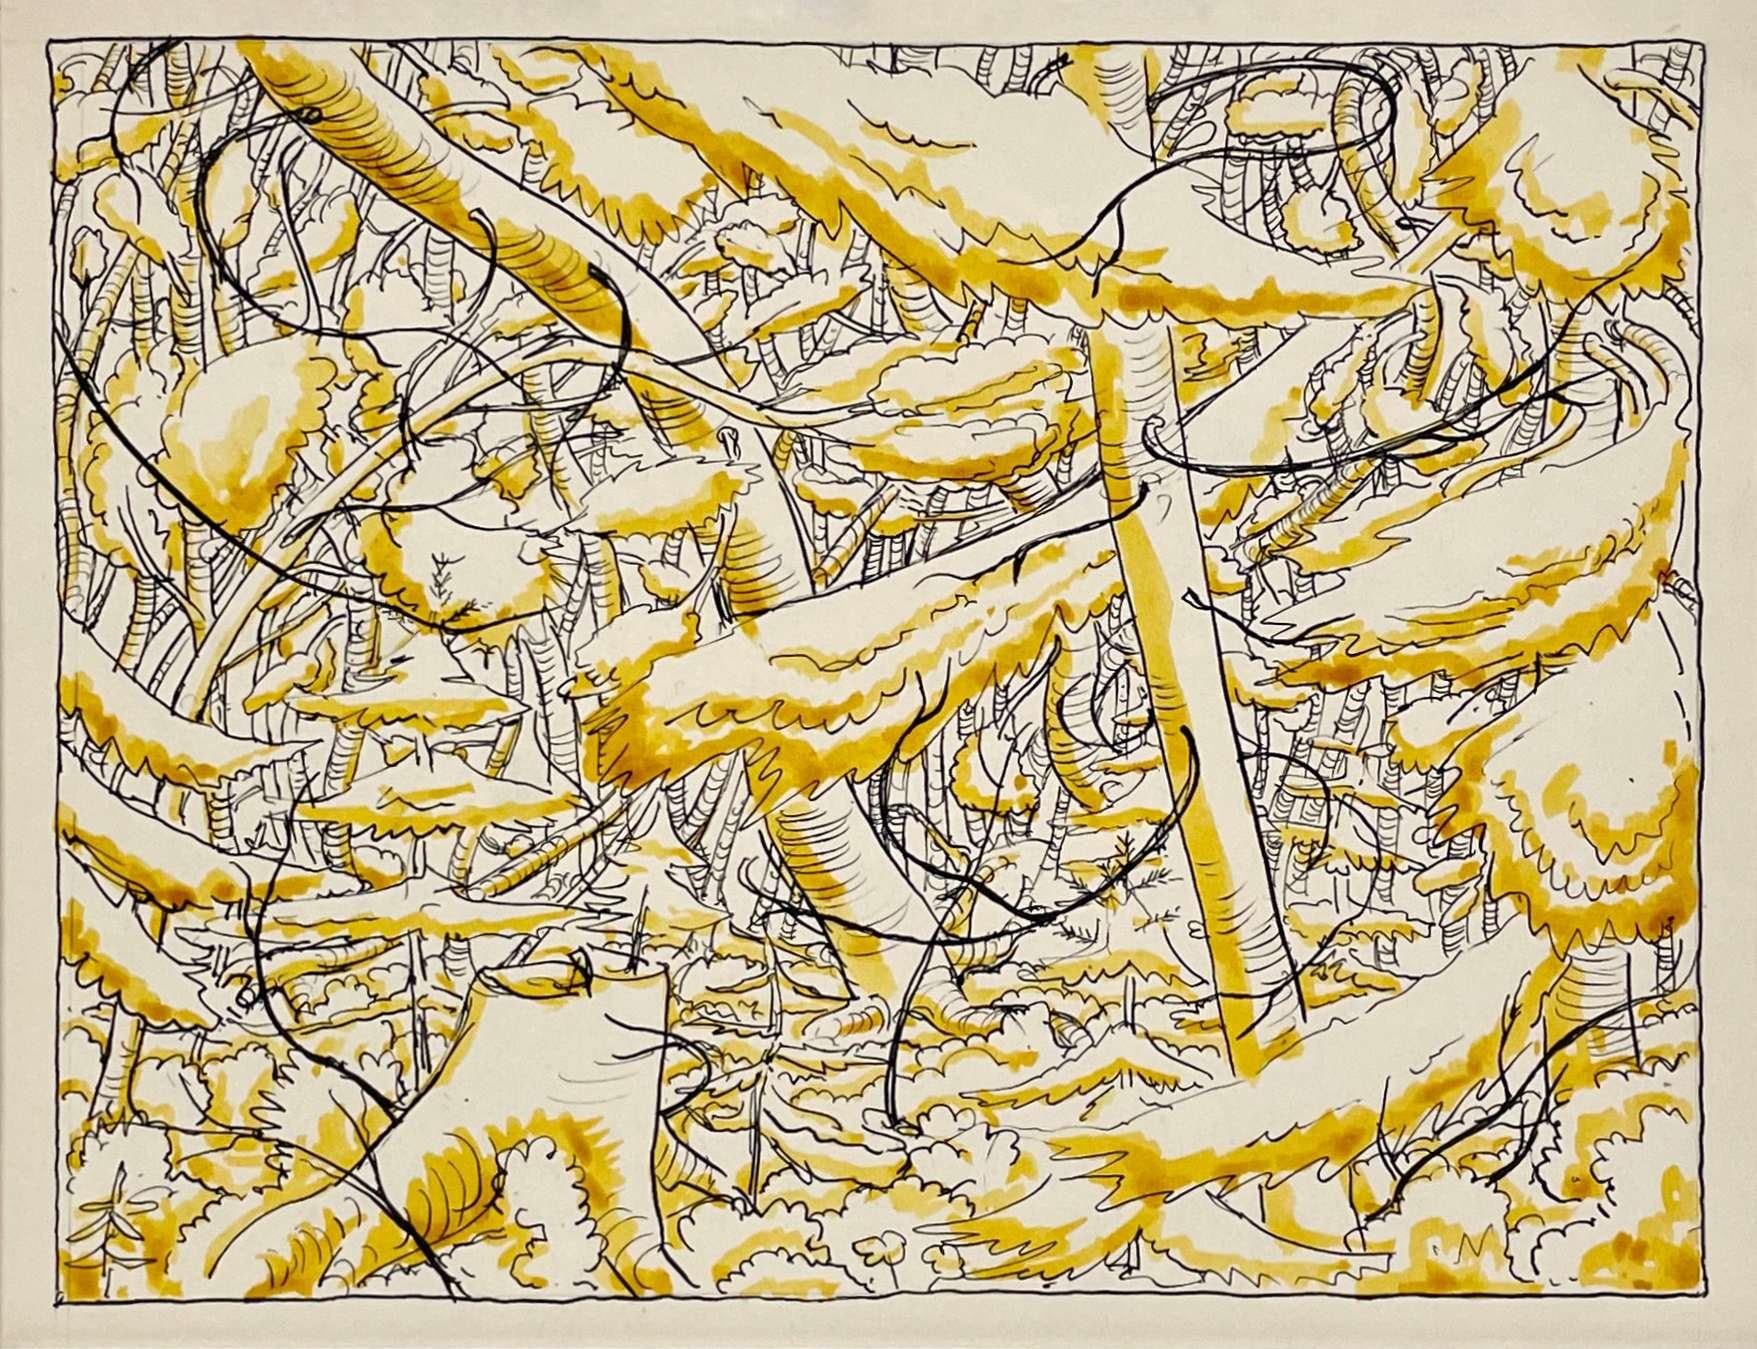 Charmante scène de forêt à l'aquarelle datant d'environ 1931, une étude en jaune réalisée par l'artiste Harold Haydon.

Harold Emerson Haydon est né à Fort William, Ontario, Canada en 1909.   Haydon est arrivé à Chicago avec sa famille en 1917 et a